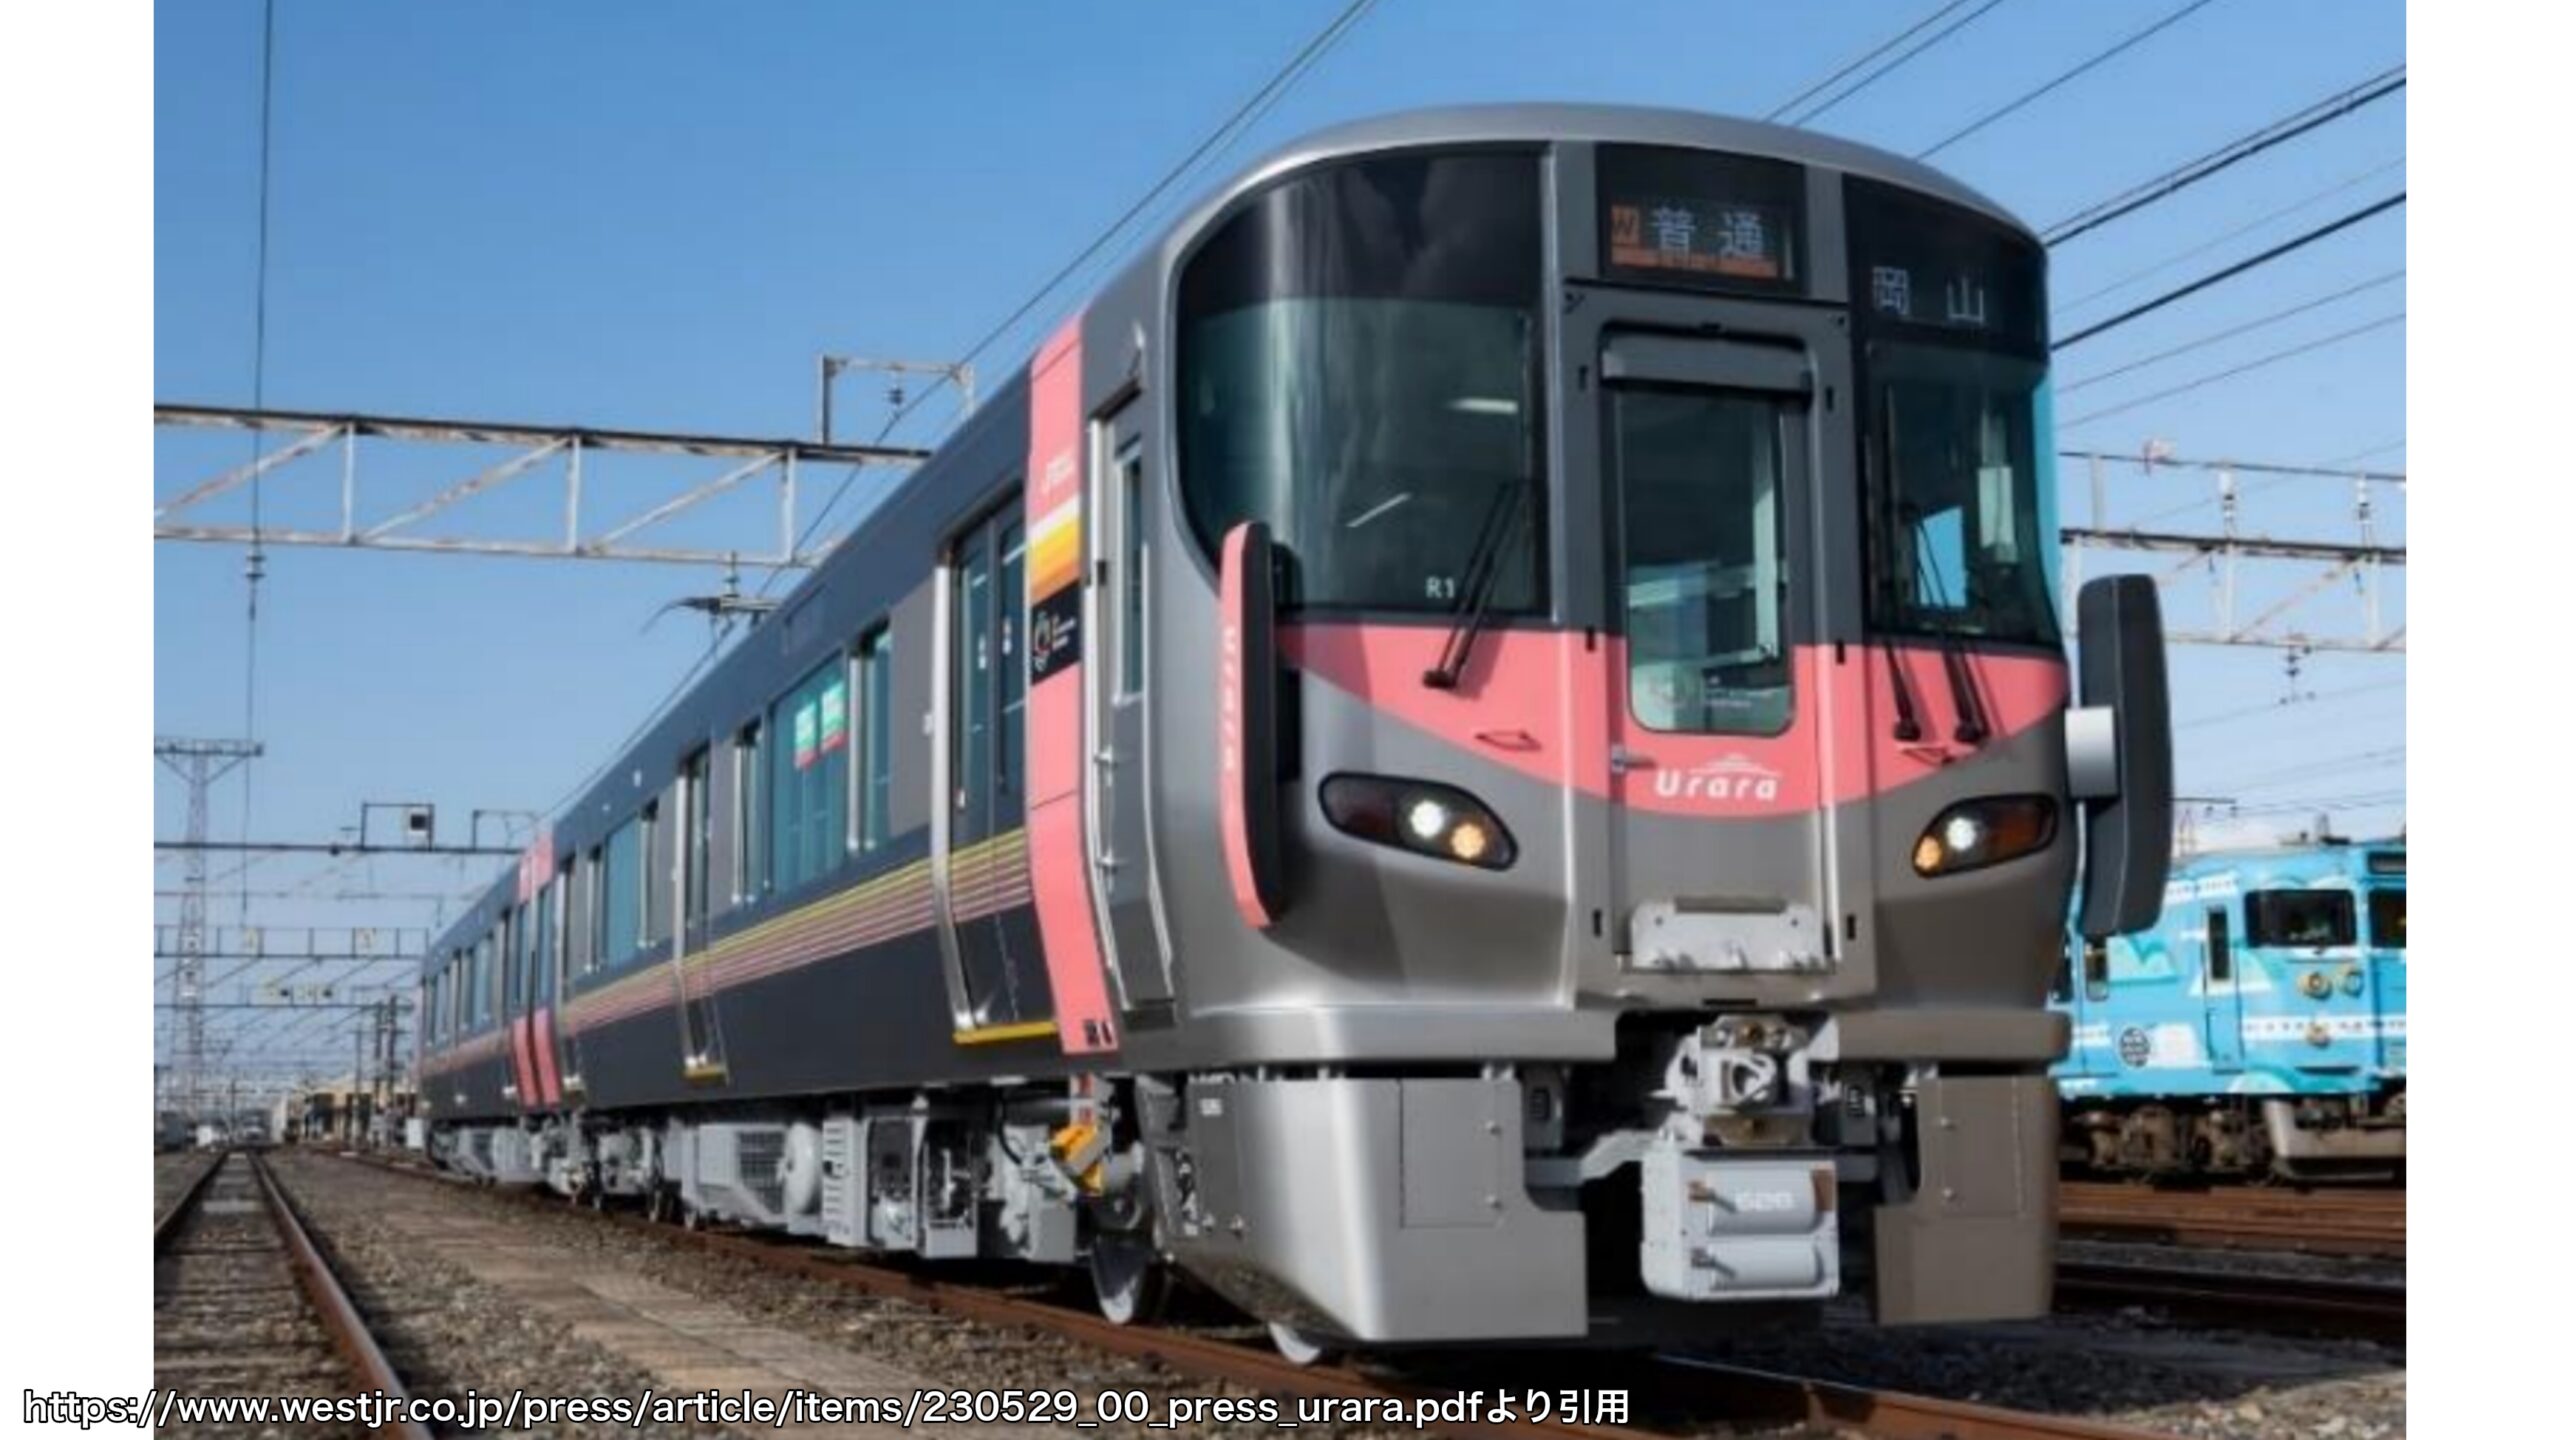 【2023年7月運行開始】岡山・備後エリア新型227系電車「Urara」 瀬戸大橋線・宇野みなと線へも